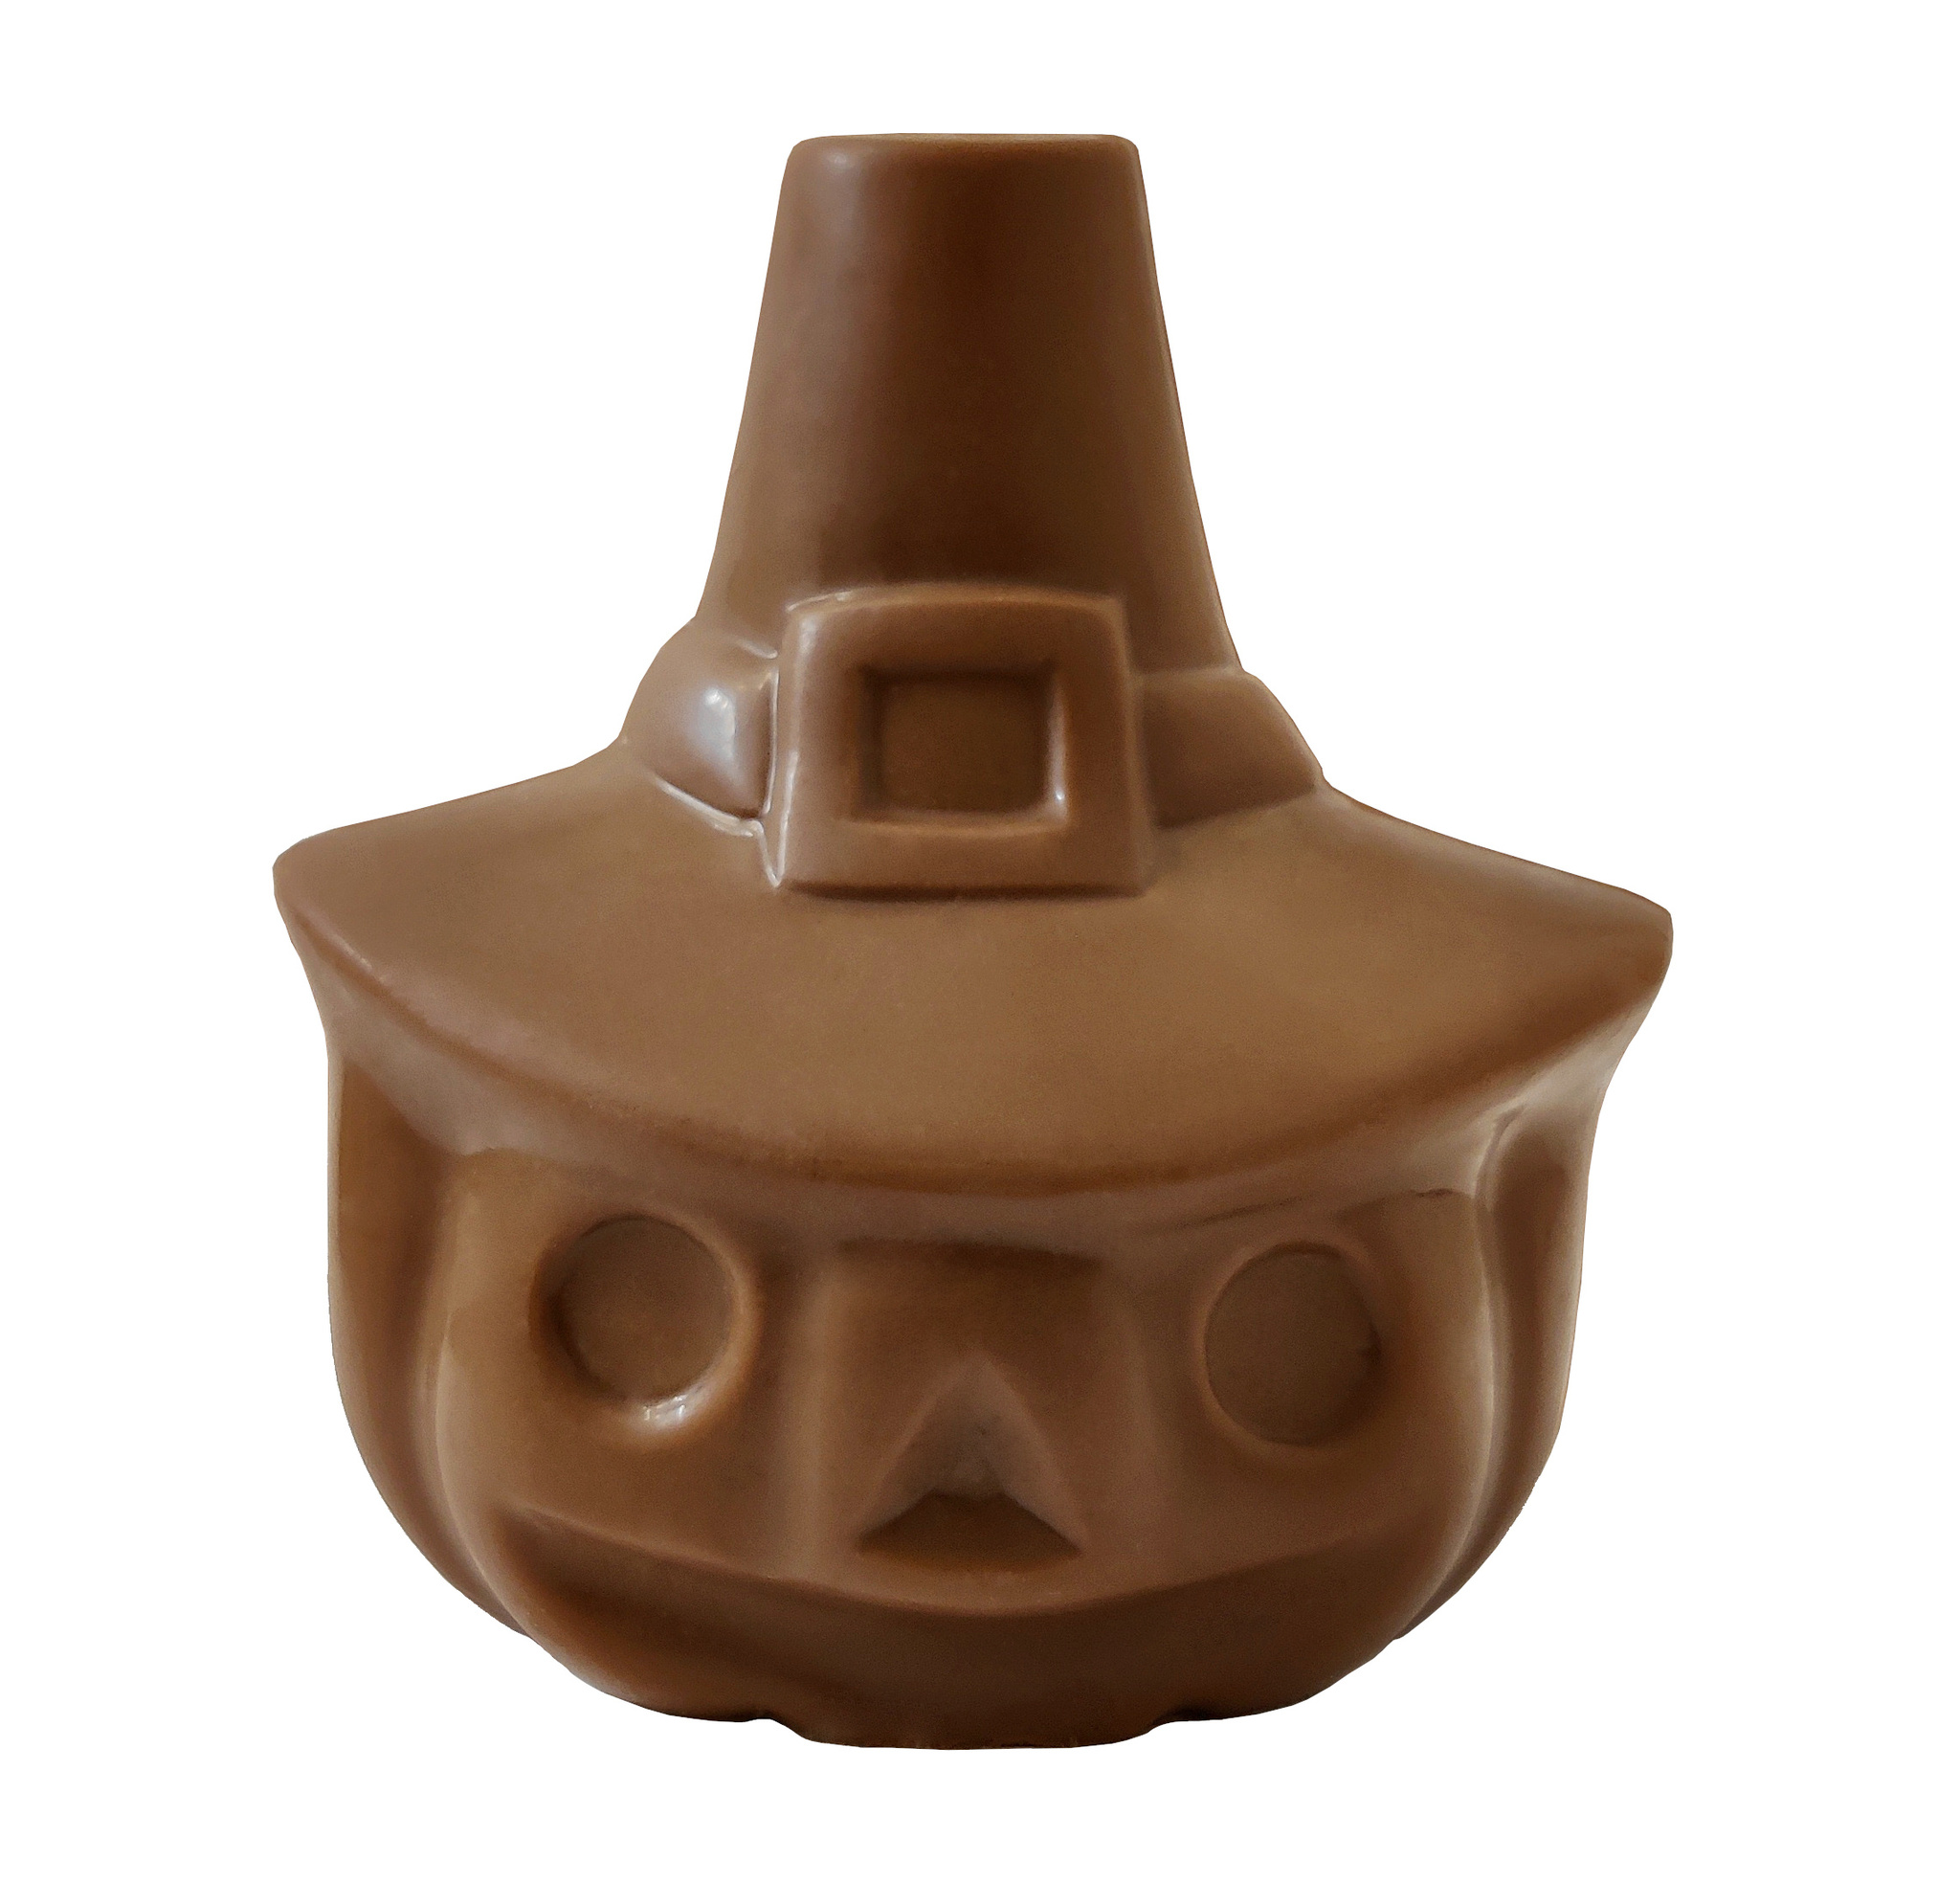 Pralinhuset - Chokladfigur - Häxpumpa i Mjölkchoklad - 40g